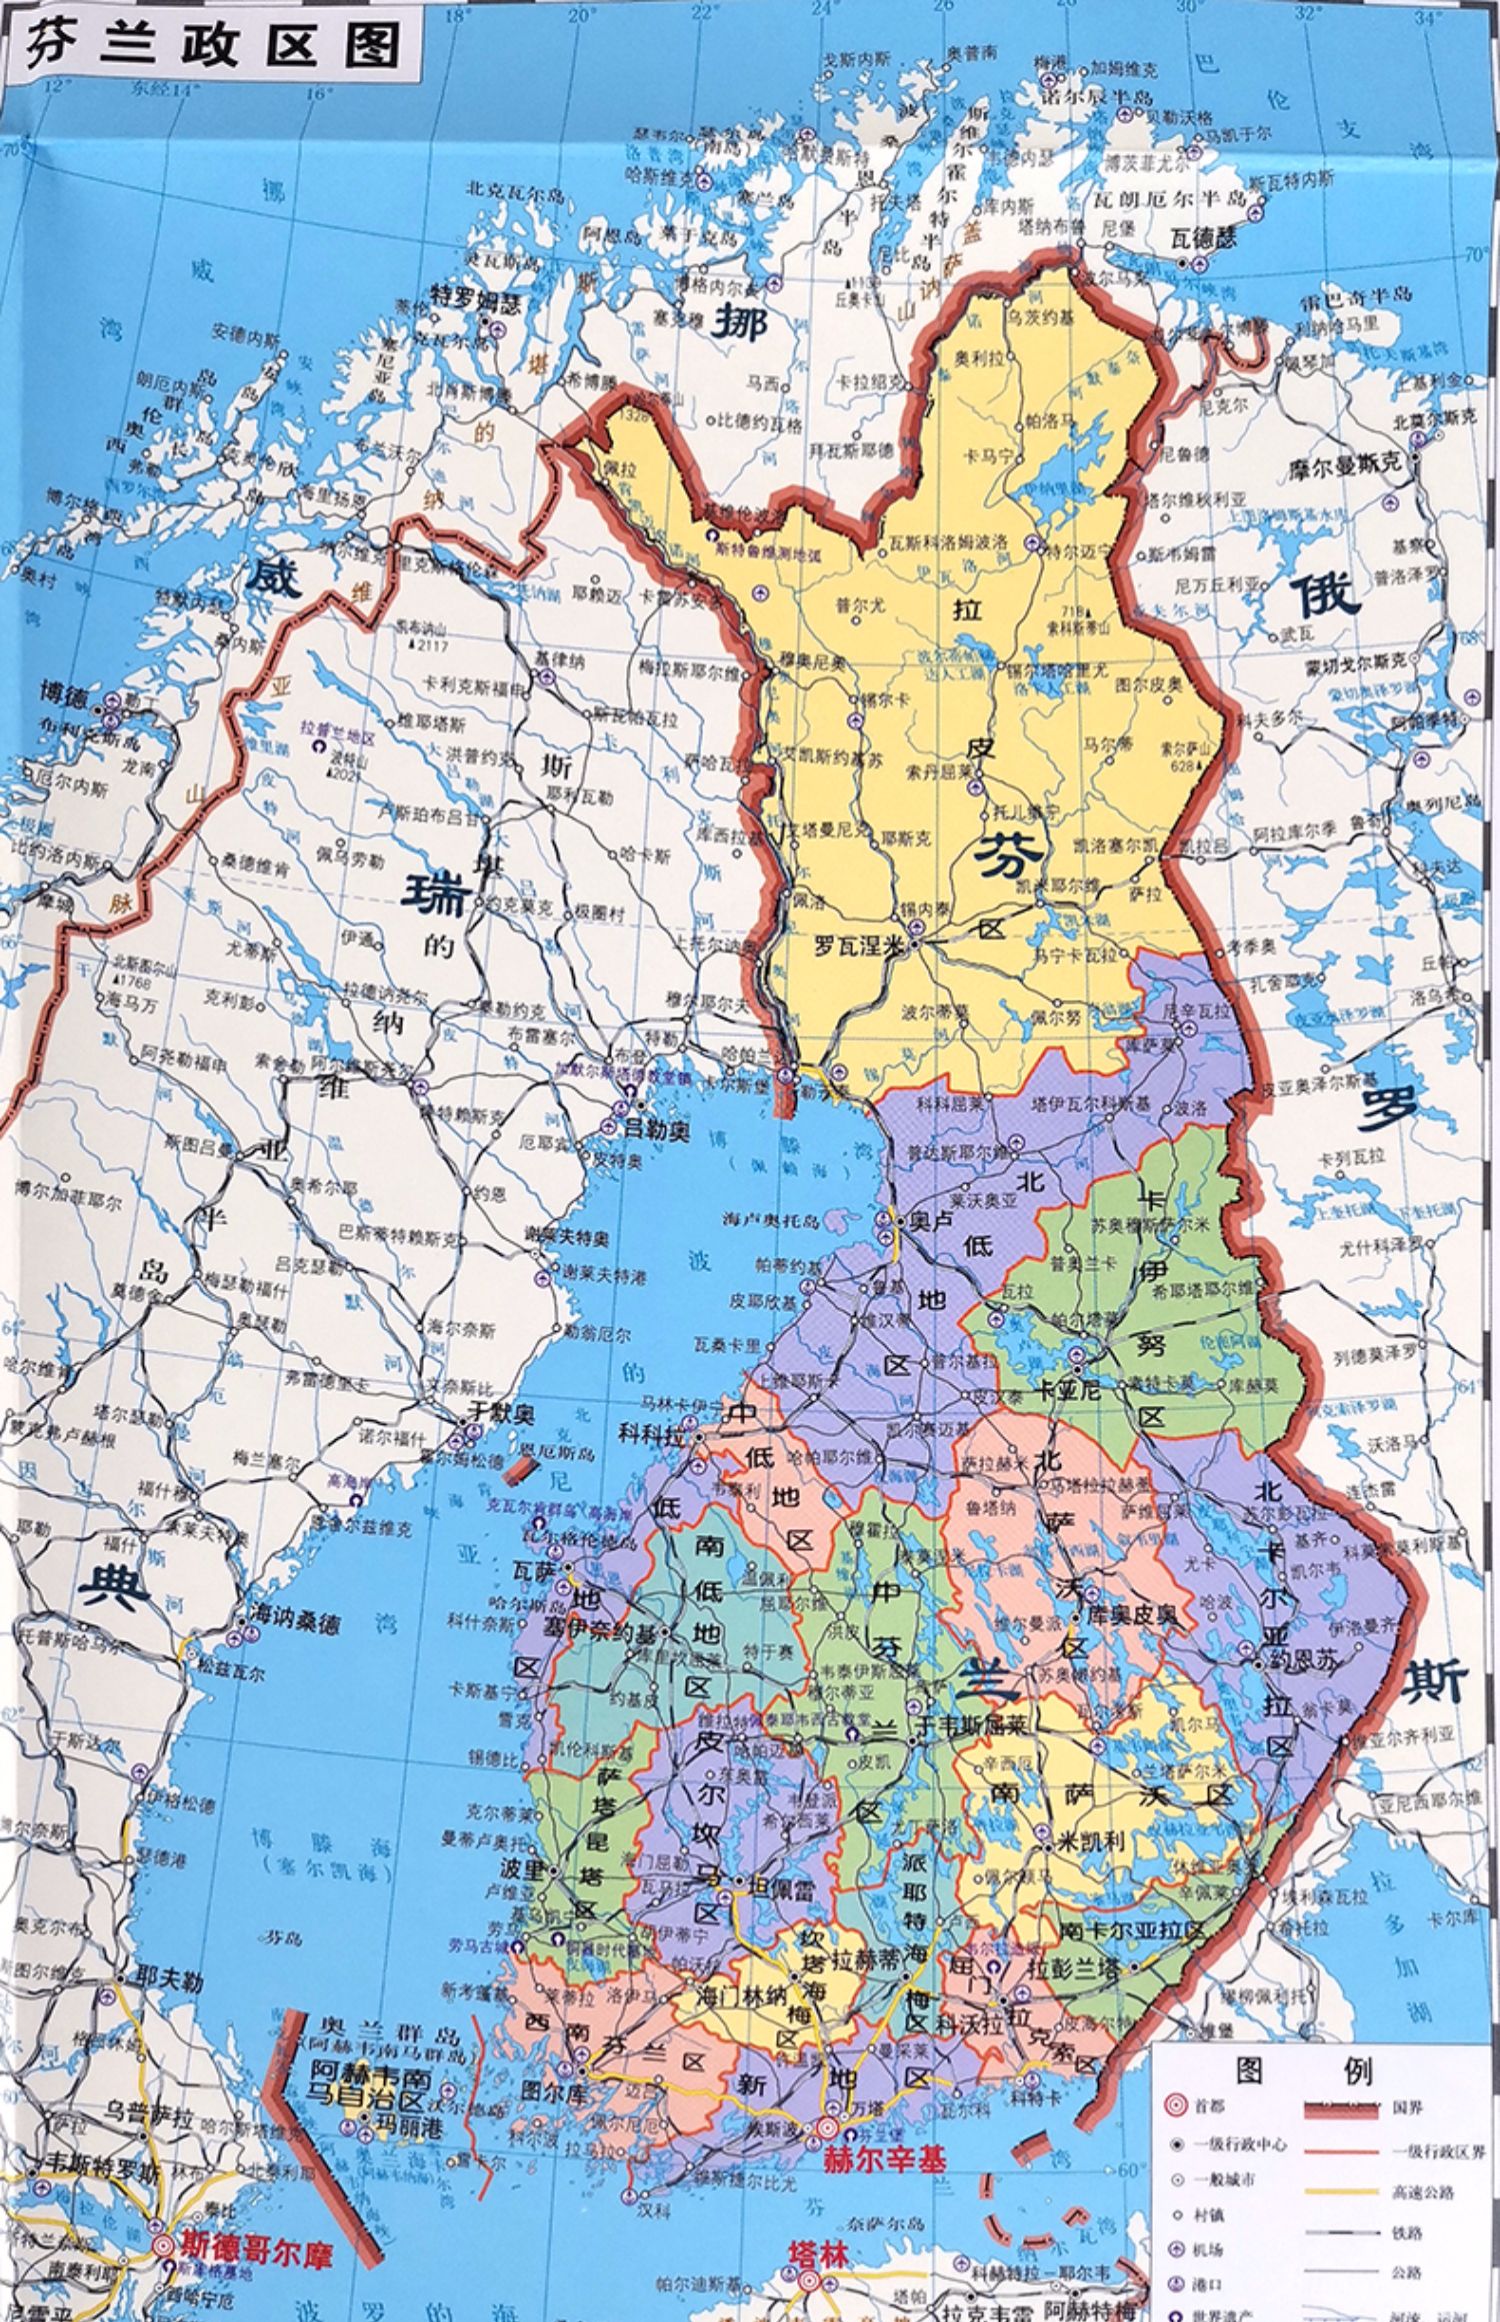 [诺森正版]芬兰地图2020年全新精装防水版 世界分国地理地图系列 双面